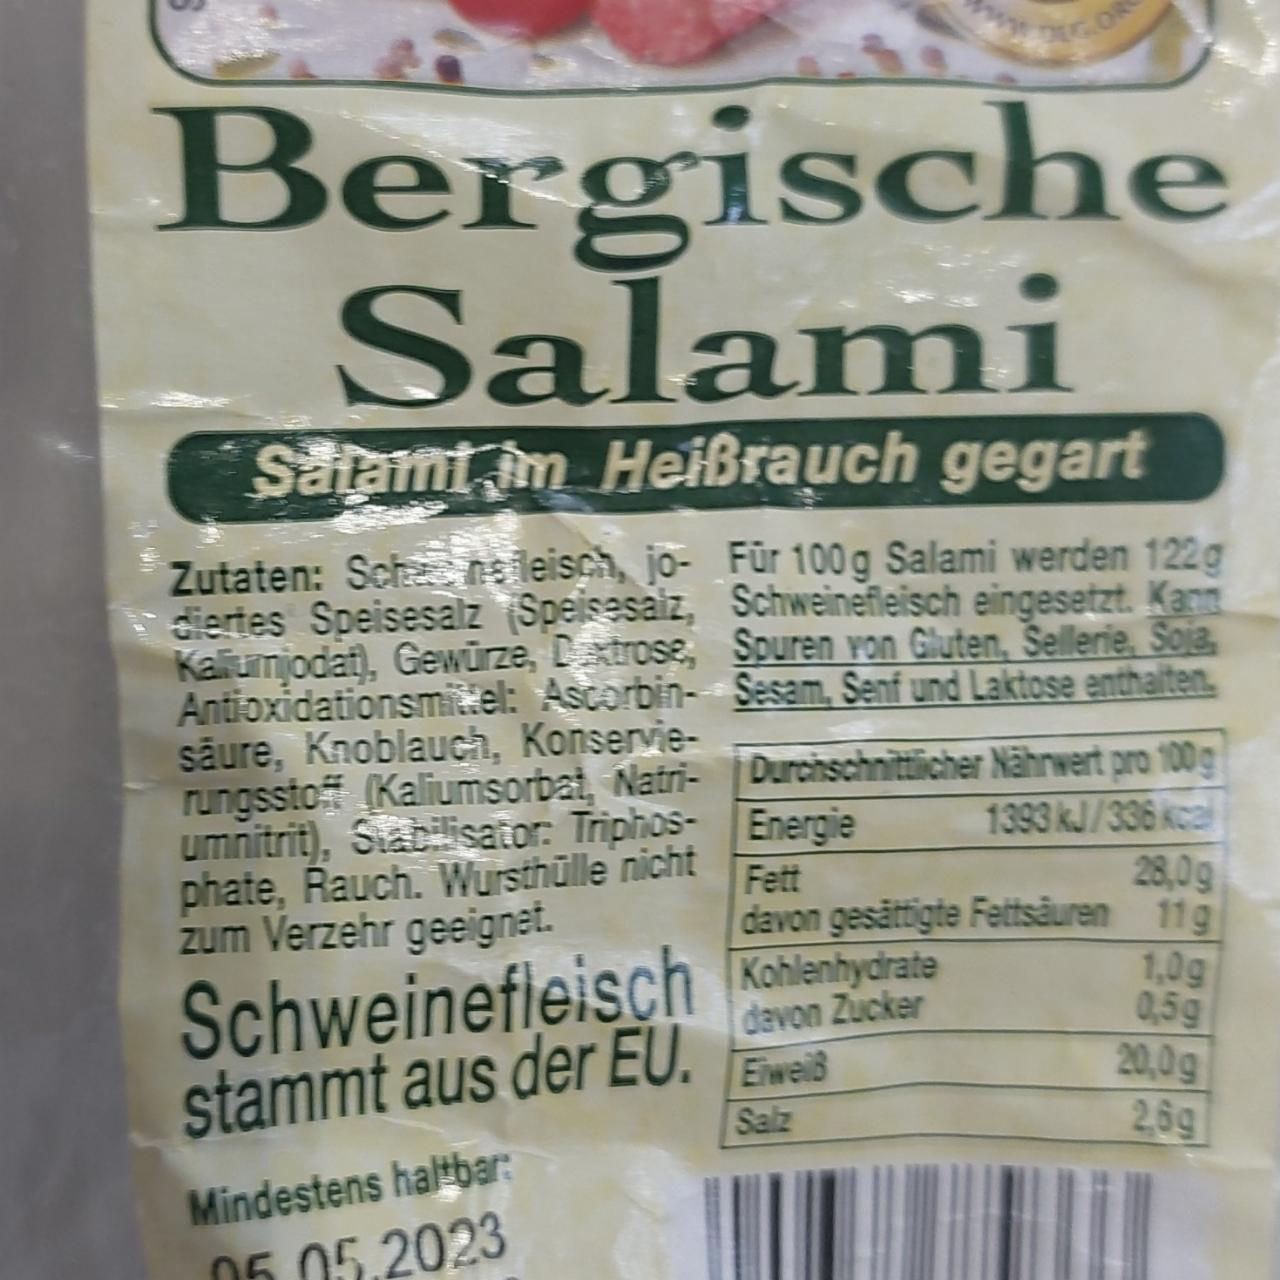 Фото - Bergische Salami im Heißrauch gegart Steinhaus